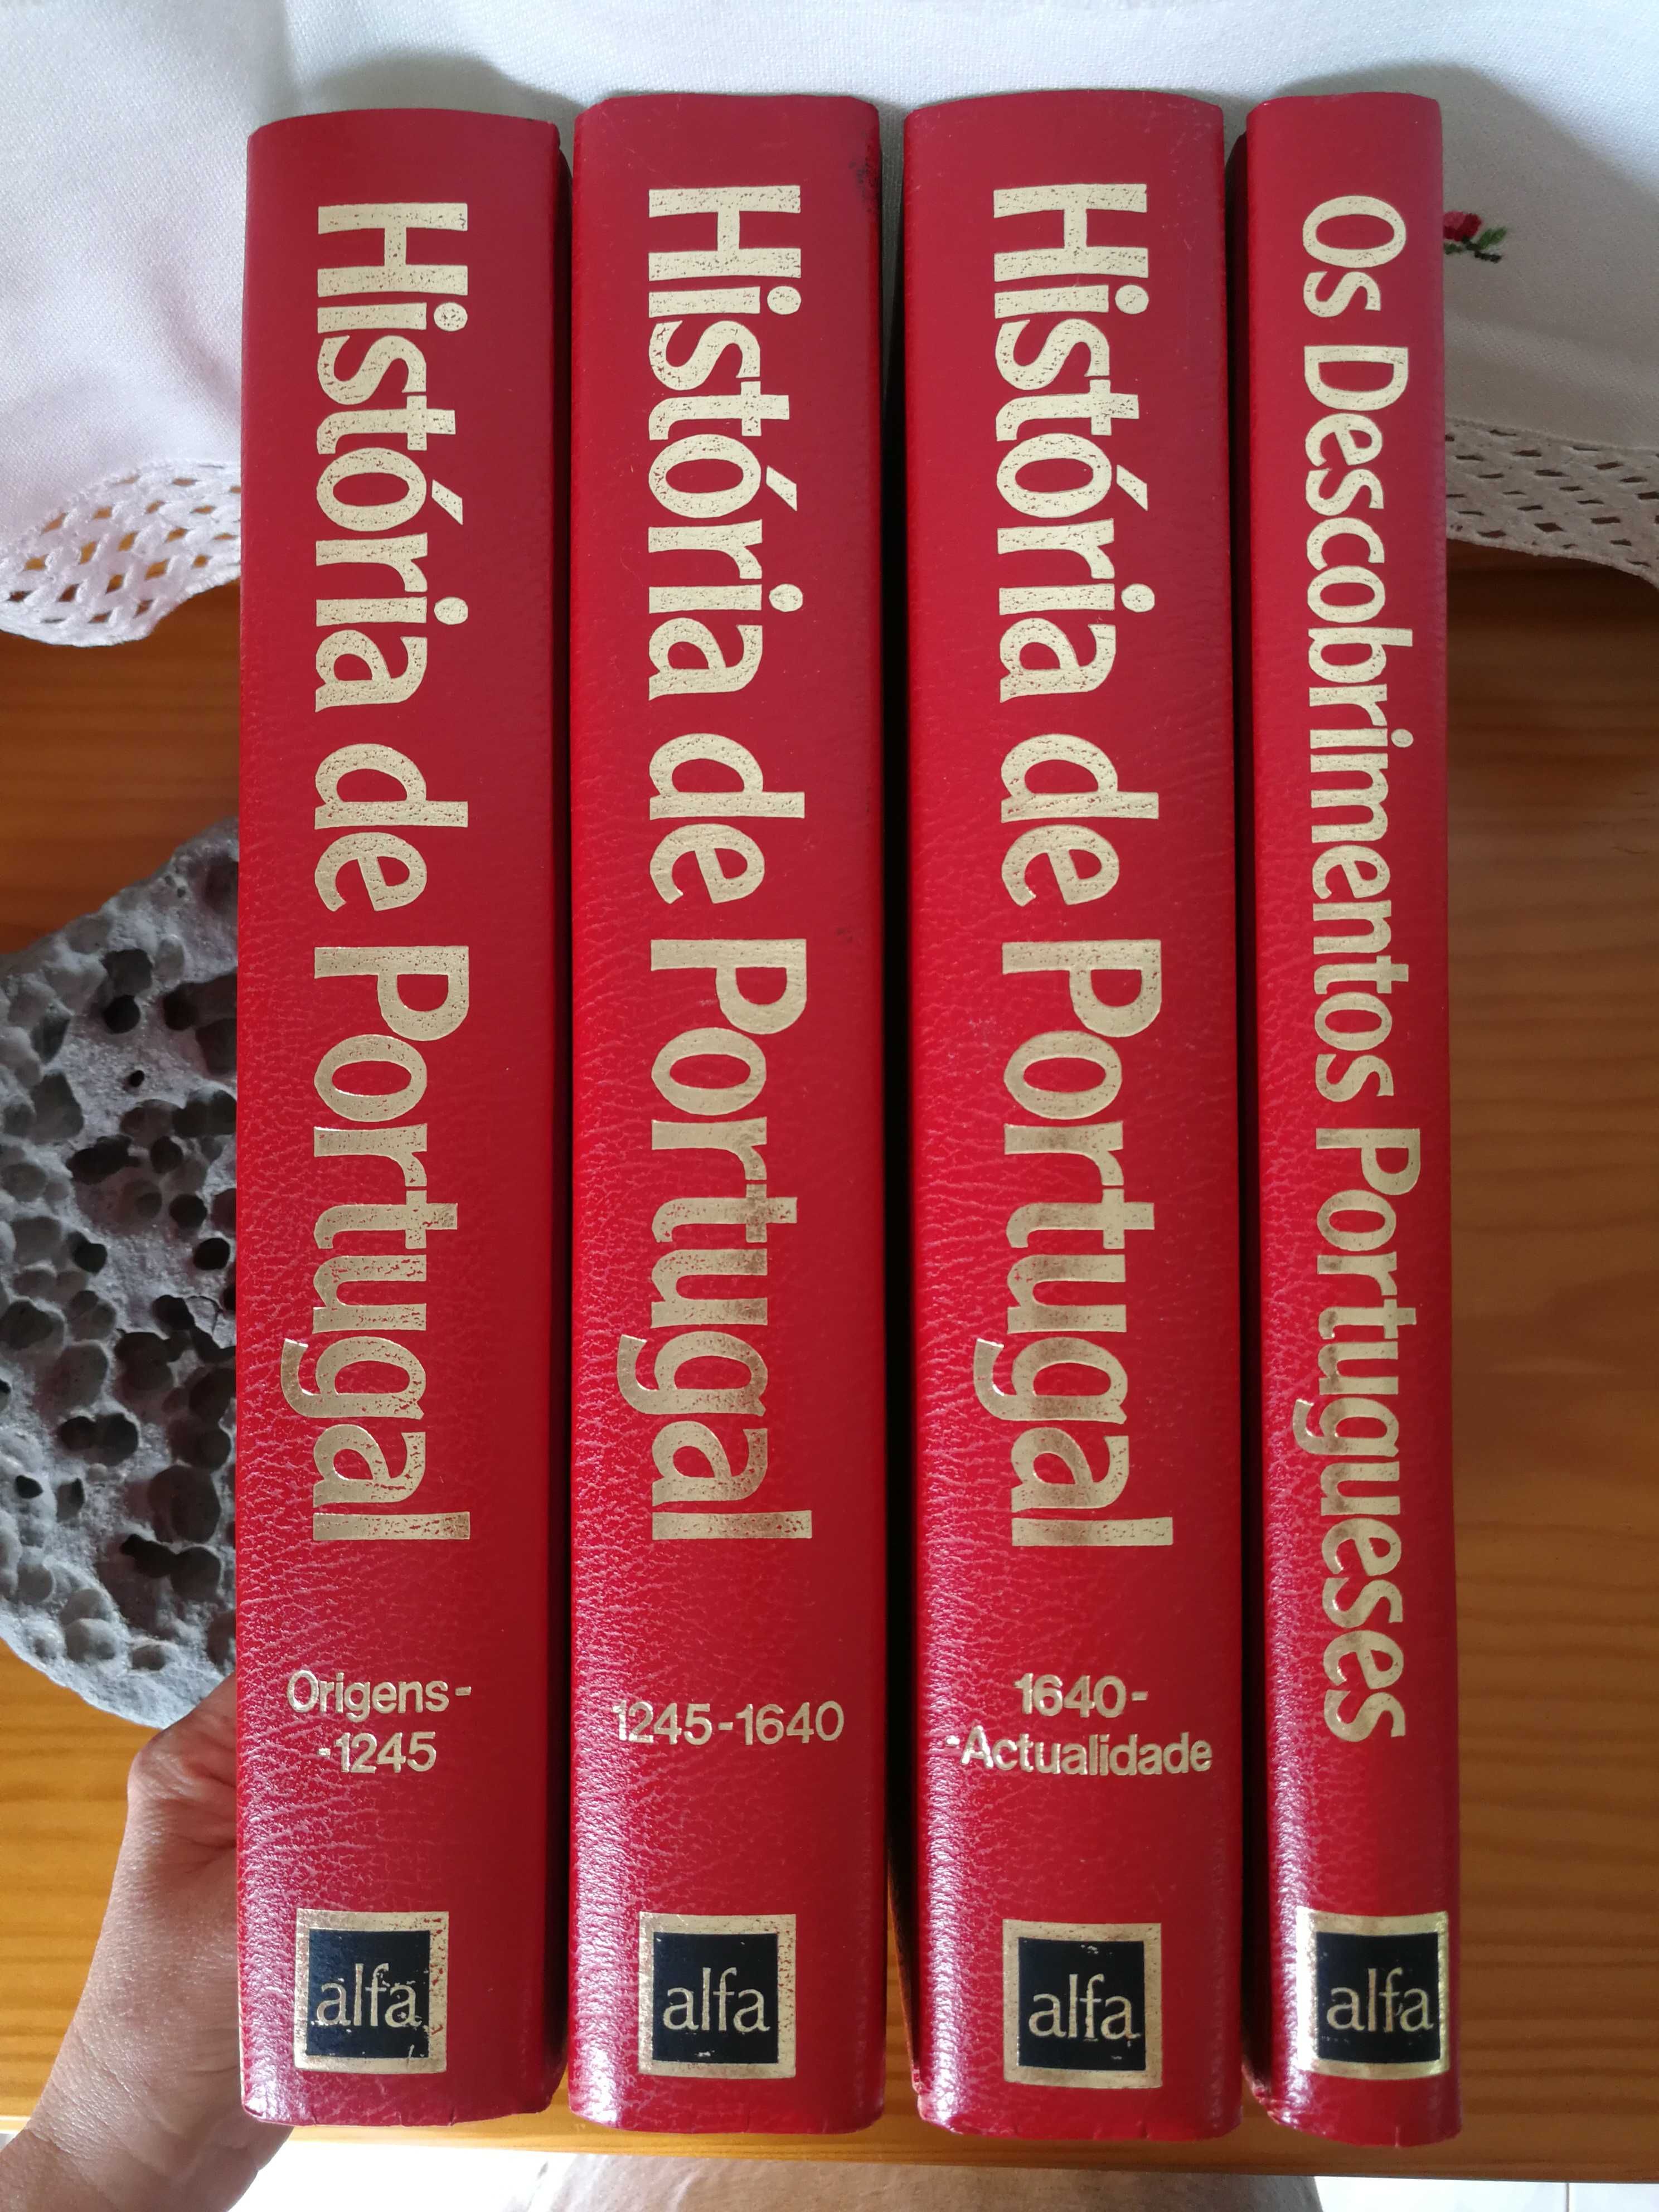 4 Volumes História Portugal-Edição Luxo 1983-Direção José H. Saraiva